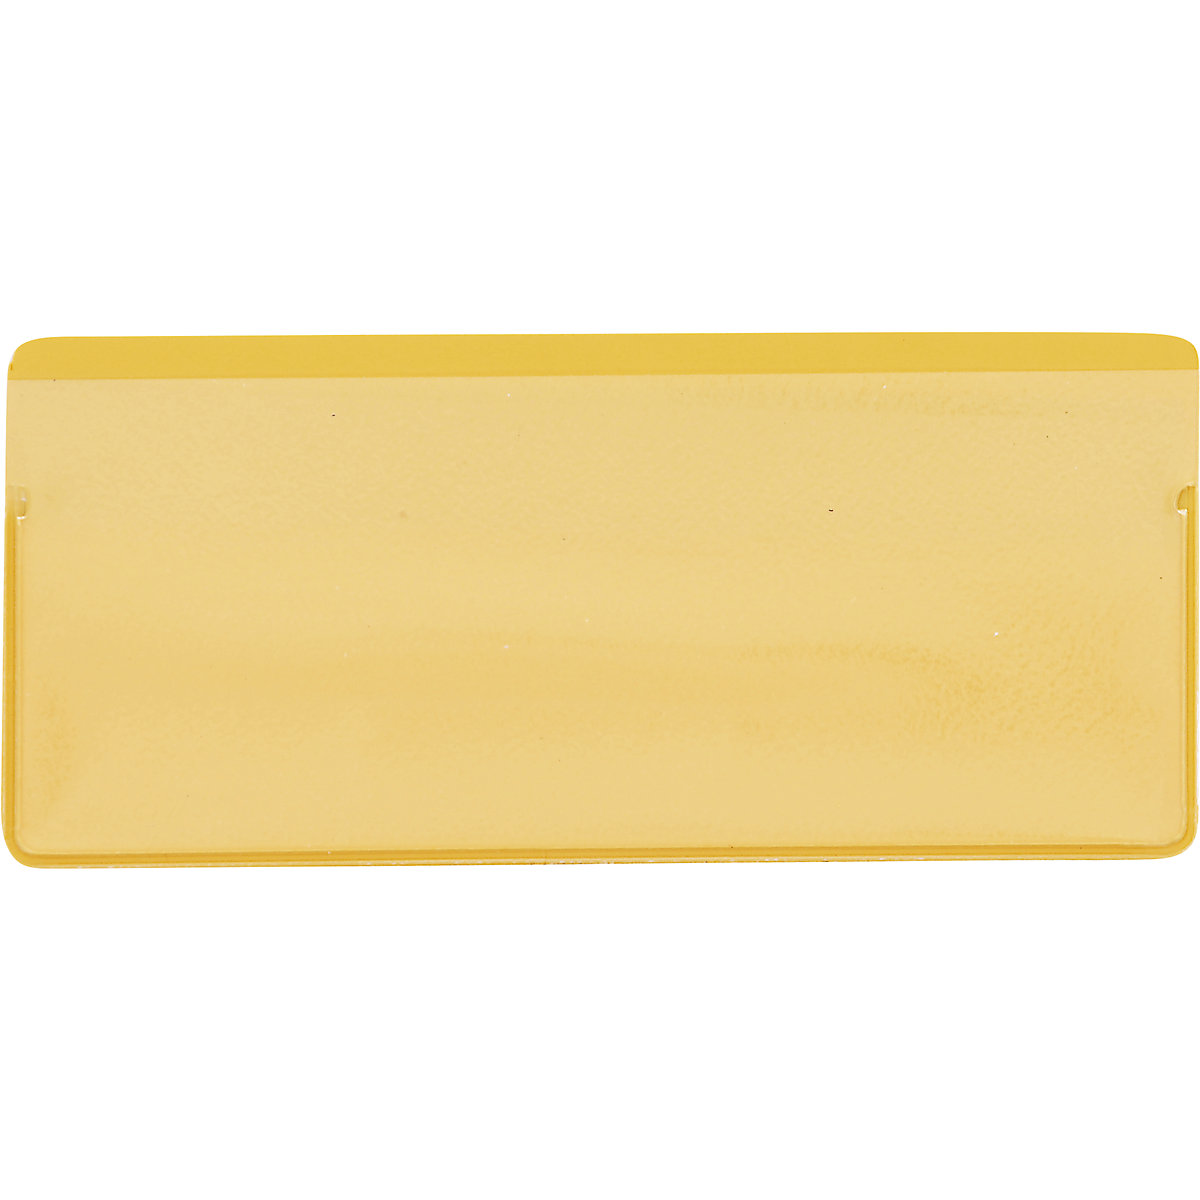 Etikettentaschen, VE 50 Stk, mit Magnetstreifen, BxH 110 x 50 mm, gelb-6